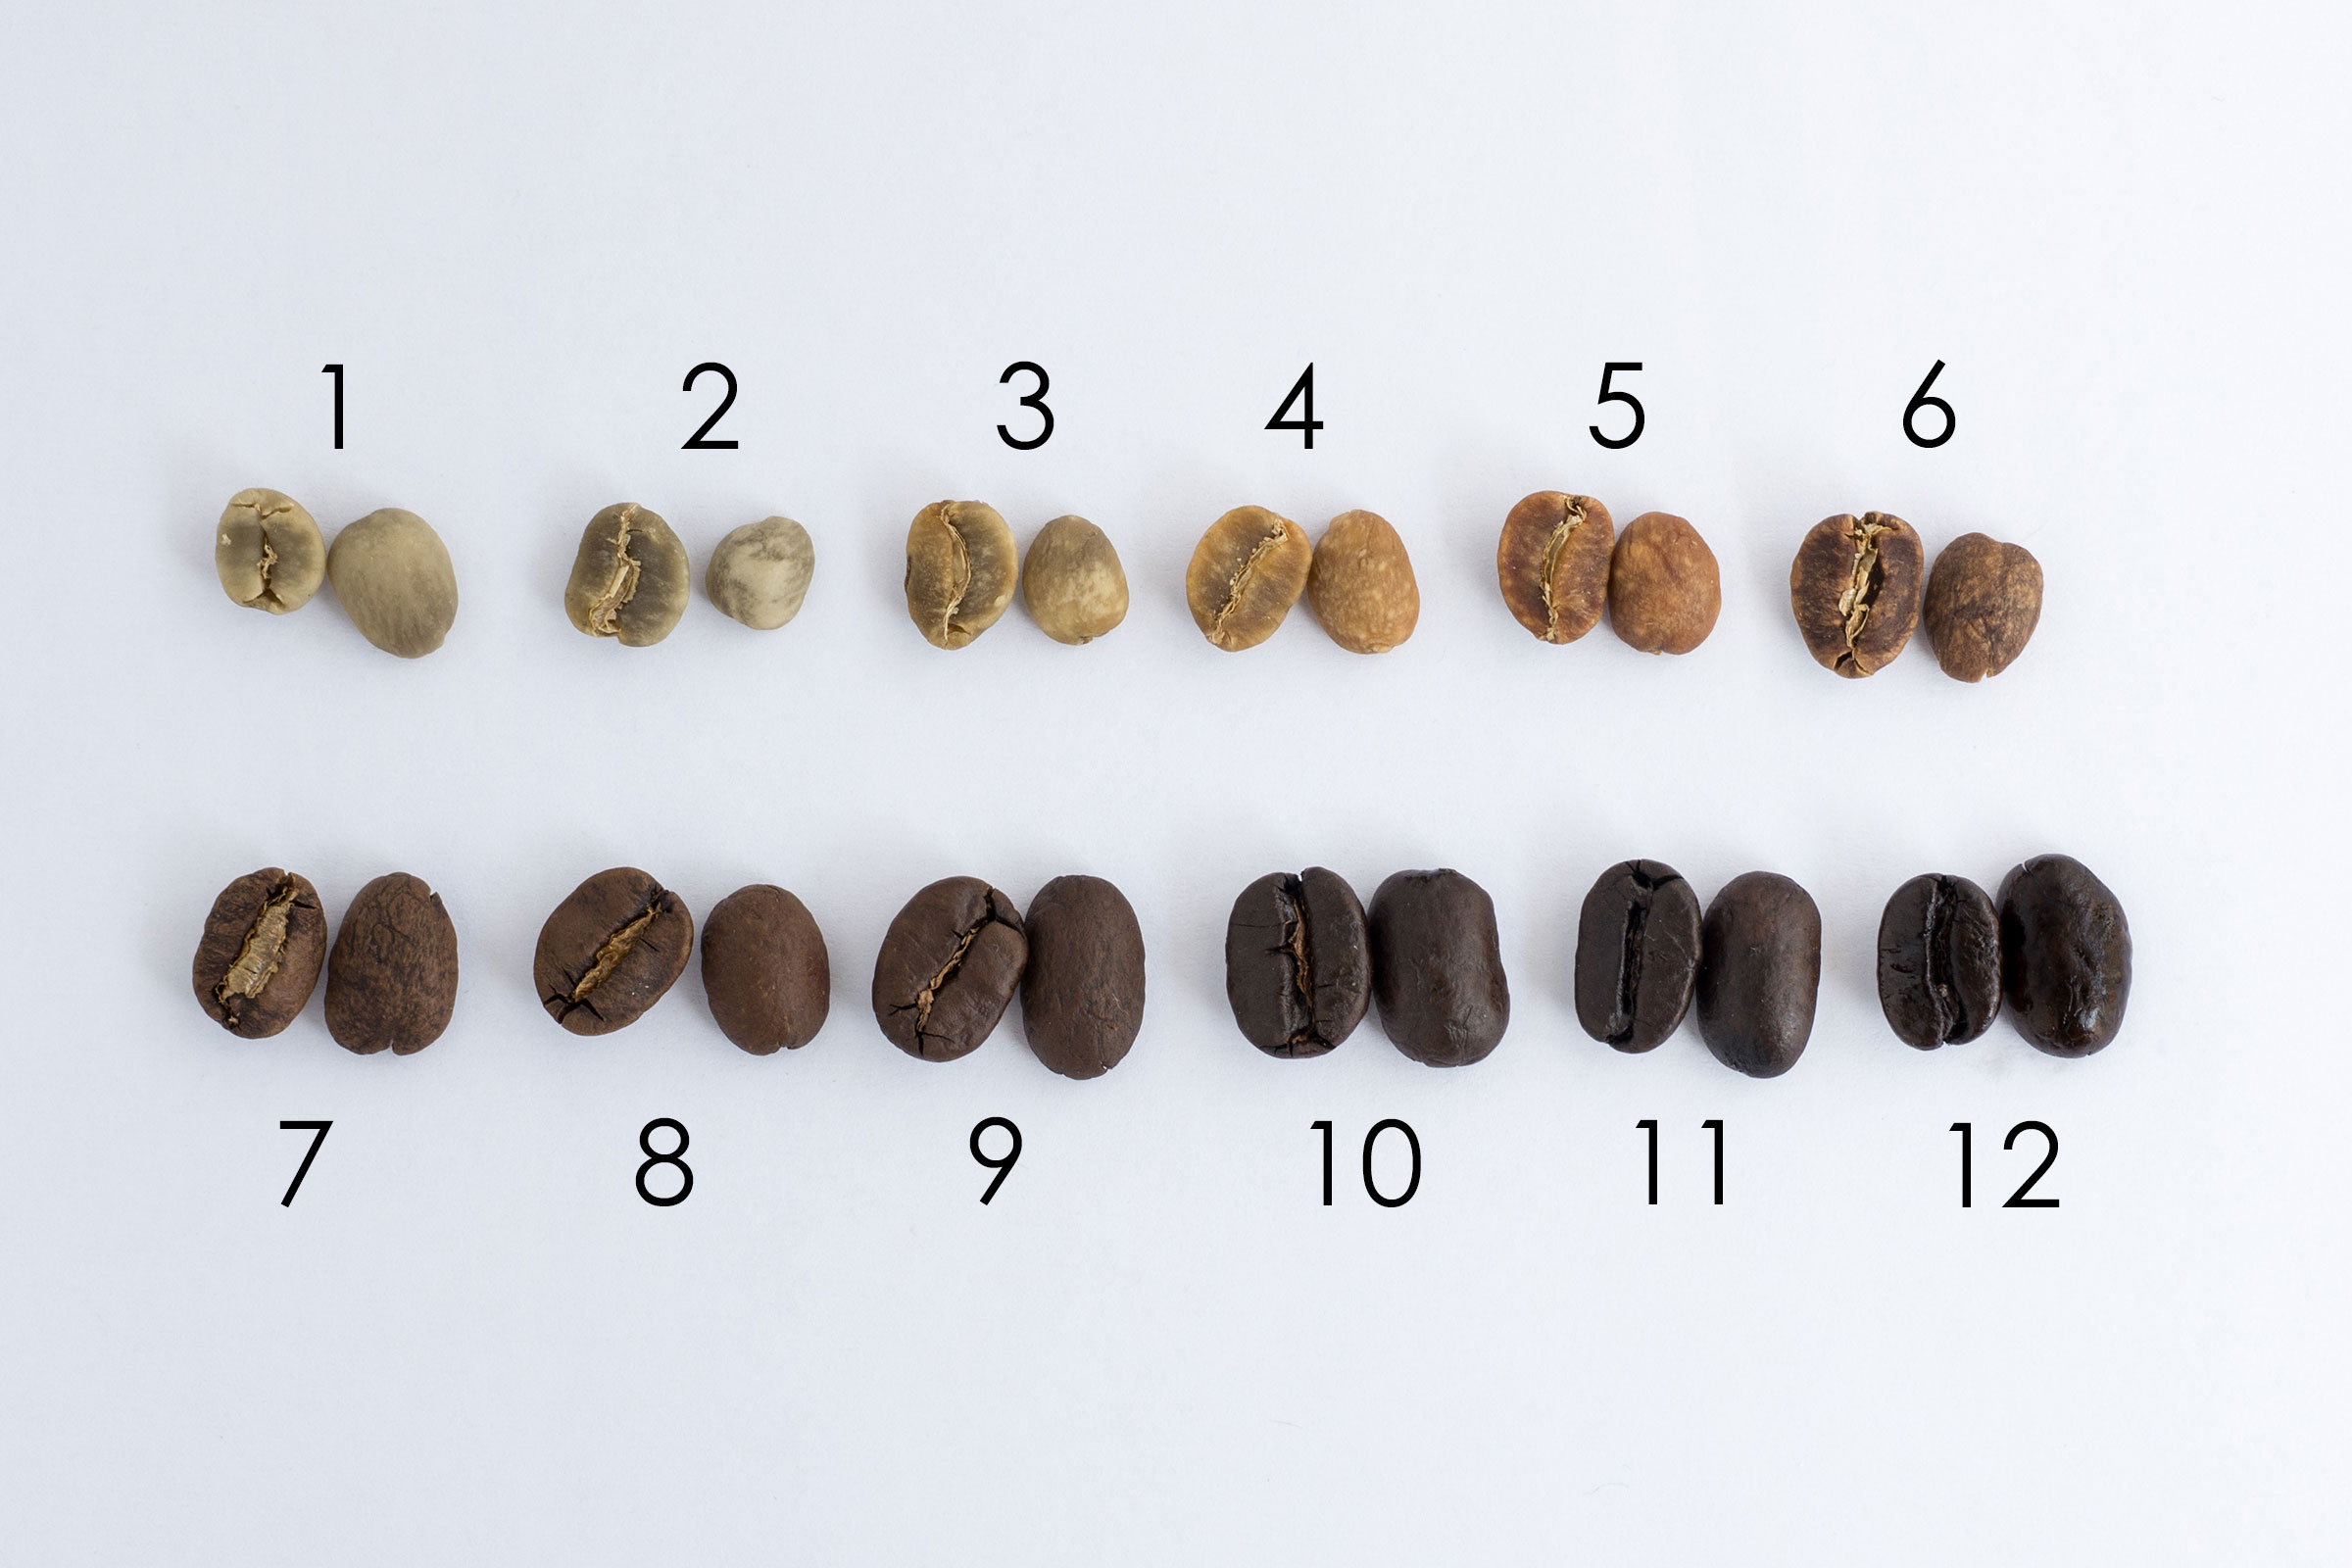 マンデリンの焙煎段階ごとの見た目や色の変化 - WINGBEAT COFFEE ROASTERS